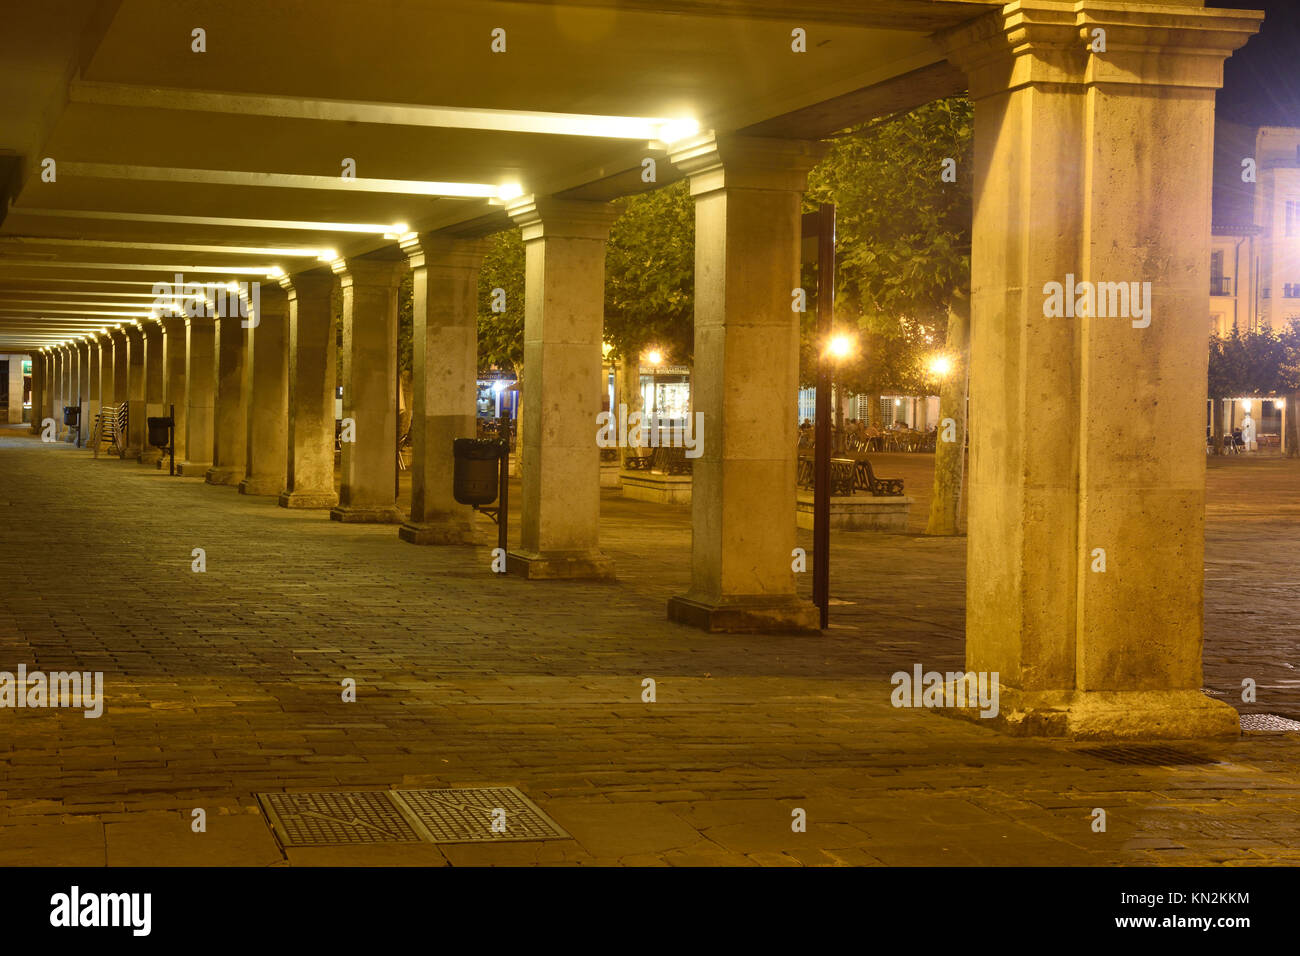 nightlife in the main square of Palencia, Castilla y Leon, Spain Stock Photo